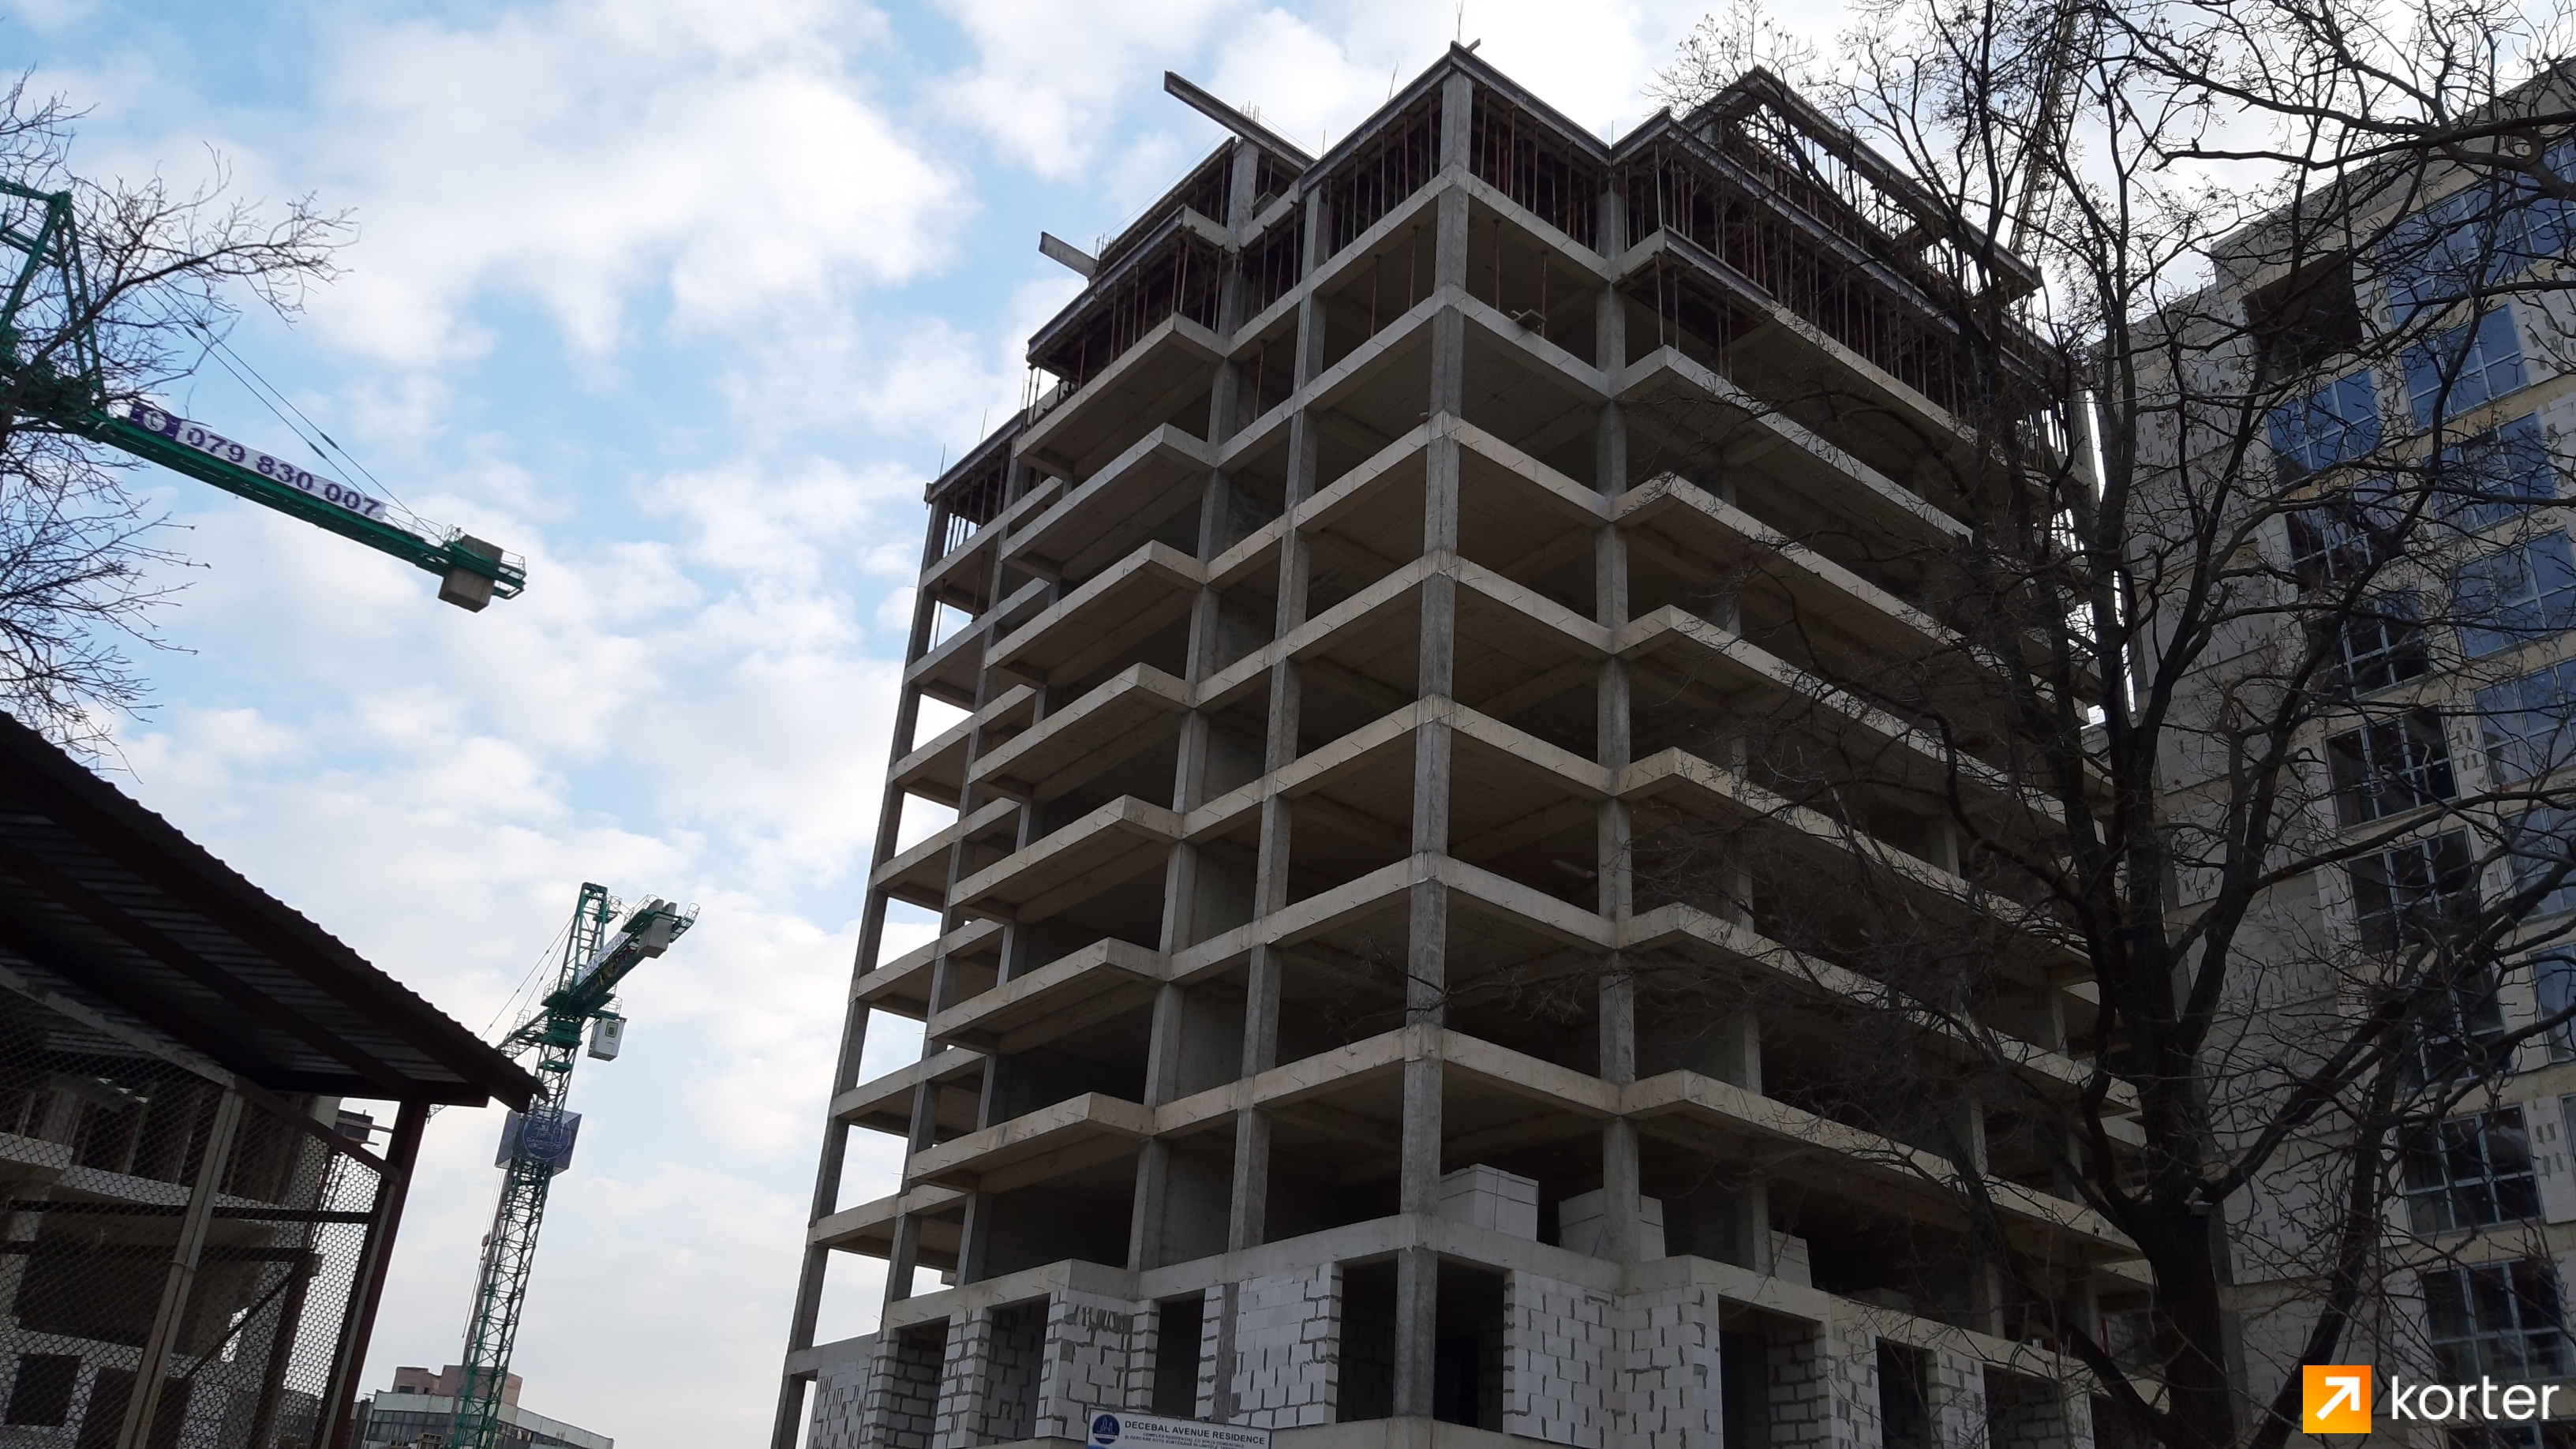 Evoluția construcției Complexului Complex Casa Mea - Punct 1, Februarie 2020